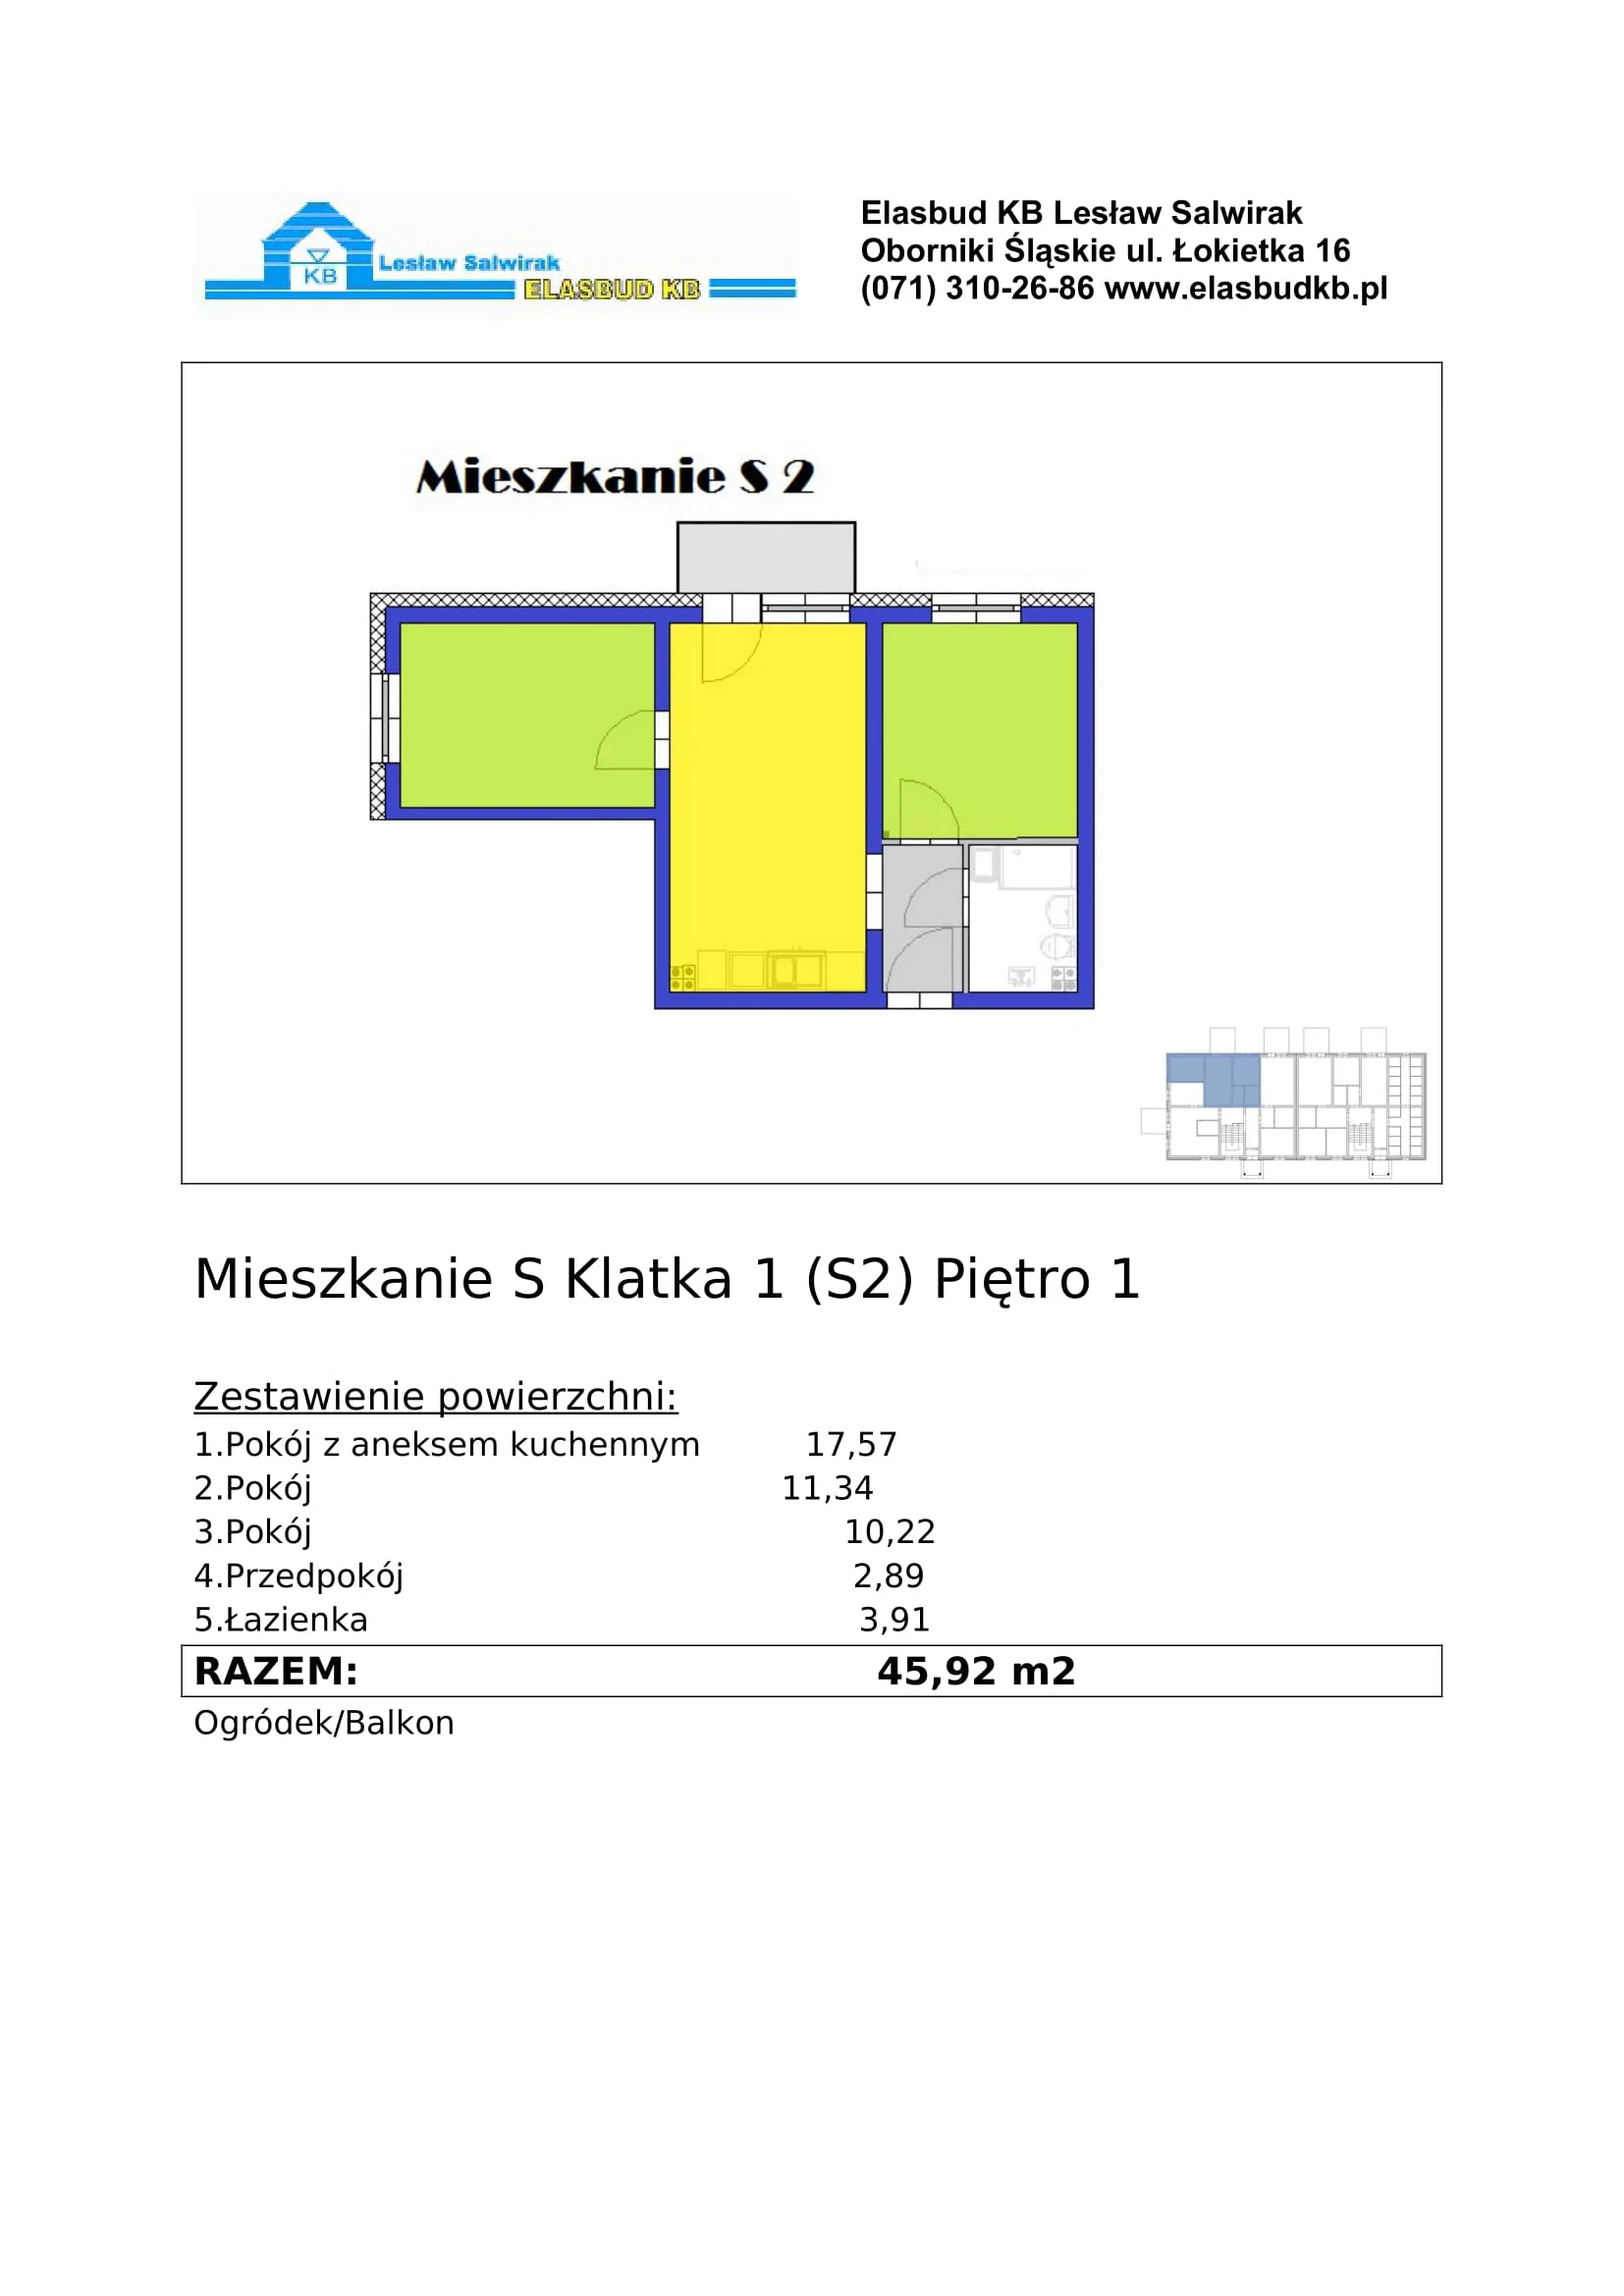 Mieszkanie 45,92 m², piętro 1, oferta nr S2, Grzybowa 2, Oborniki Śląskie, ul.Grzybowa